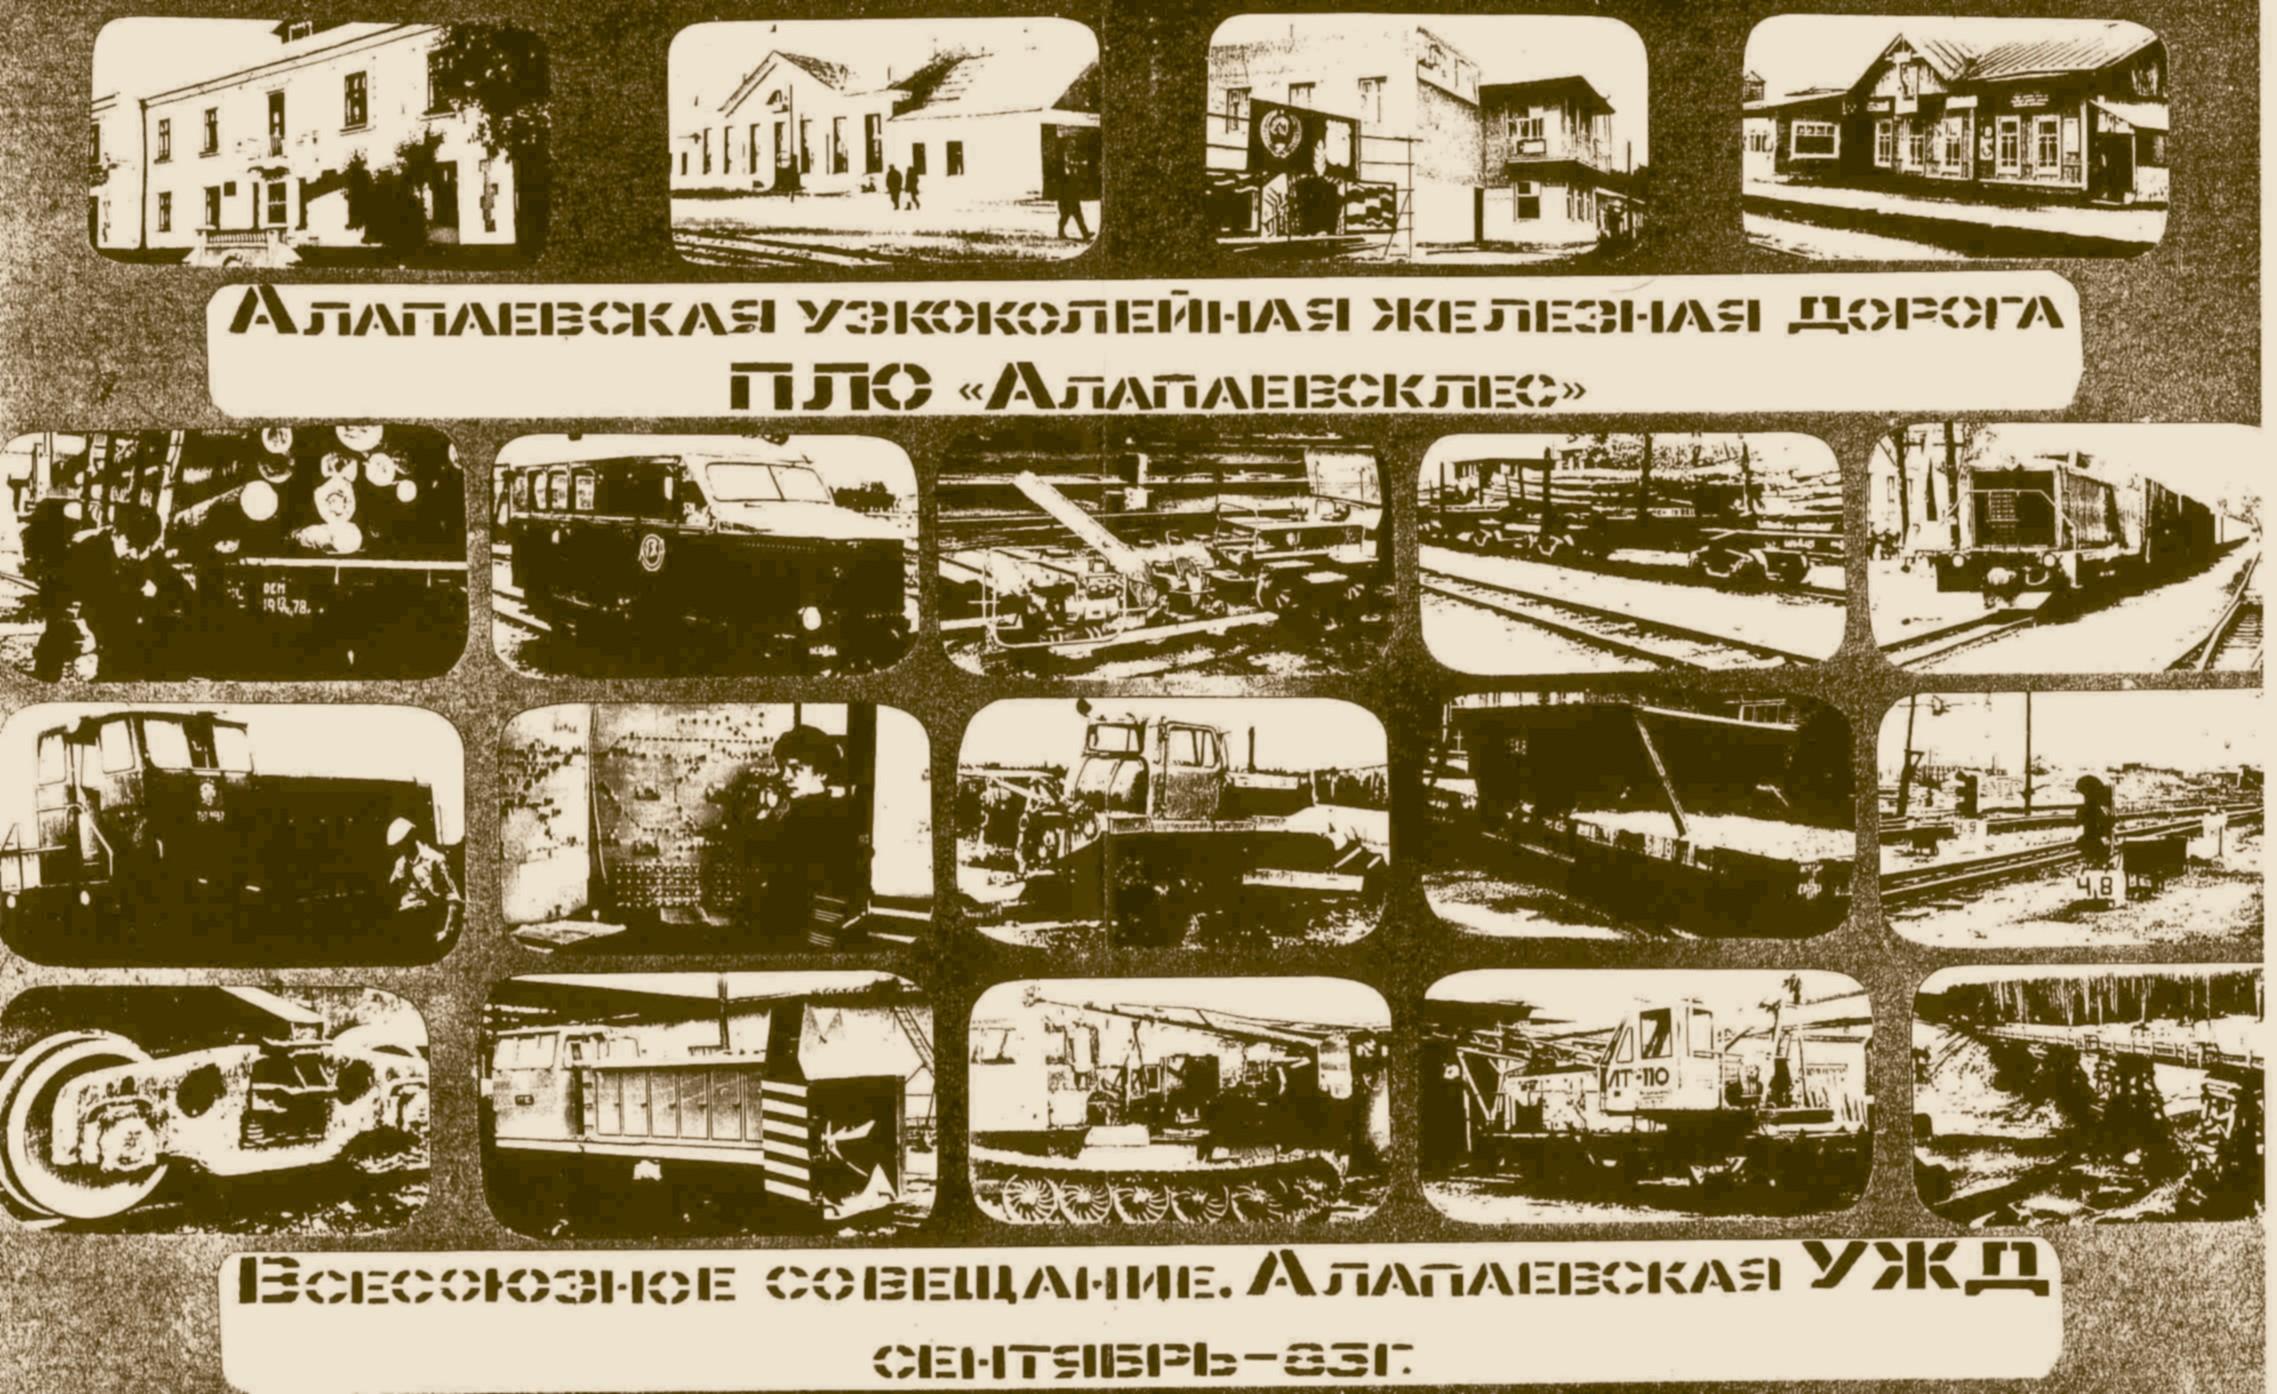 Фотографии Алапаевской узкоколейной железной дороги, полученные в Верхнелупьинском леспромхозе (Урдома, Архангельская область)